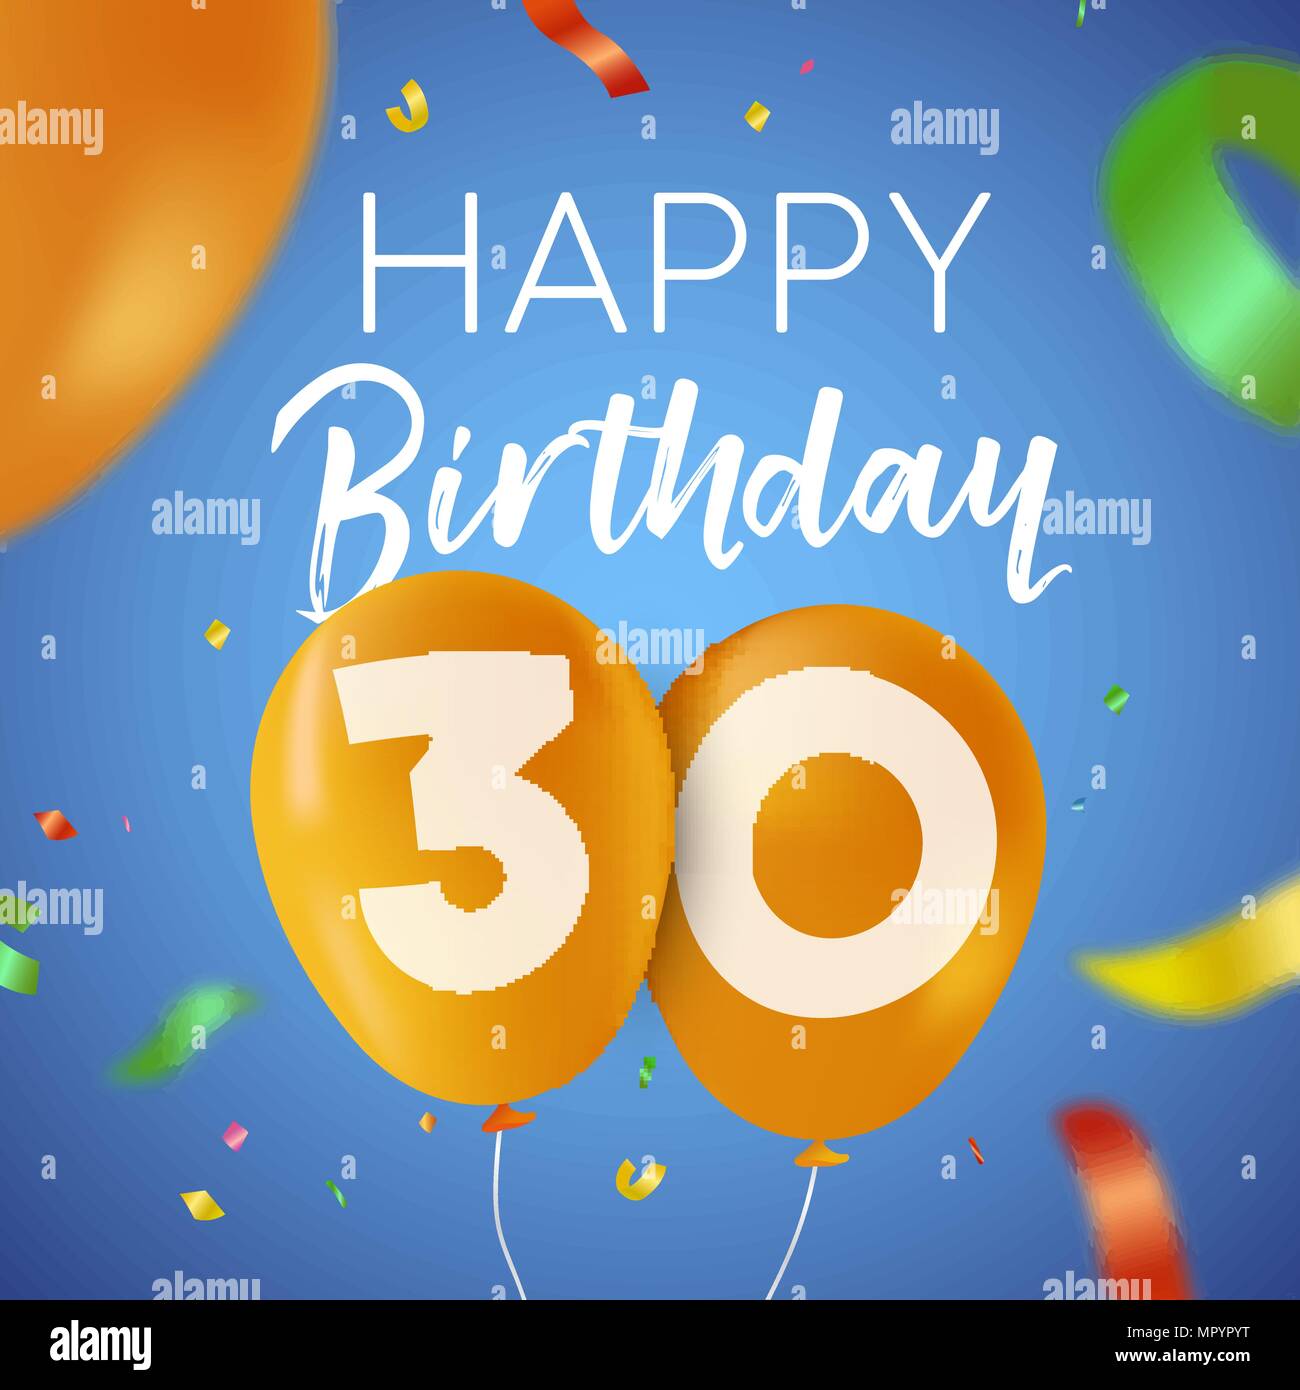 Happy Birthday 30 30 Jahre Spaß Design mit Ballon Anzahl und bunte Konfetti Dekoration. Ideal für Party Einladung oder Grußkarte. EPS 10 vec Stock Vektor